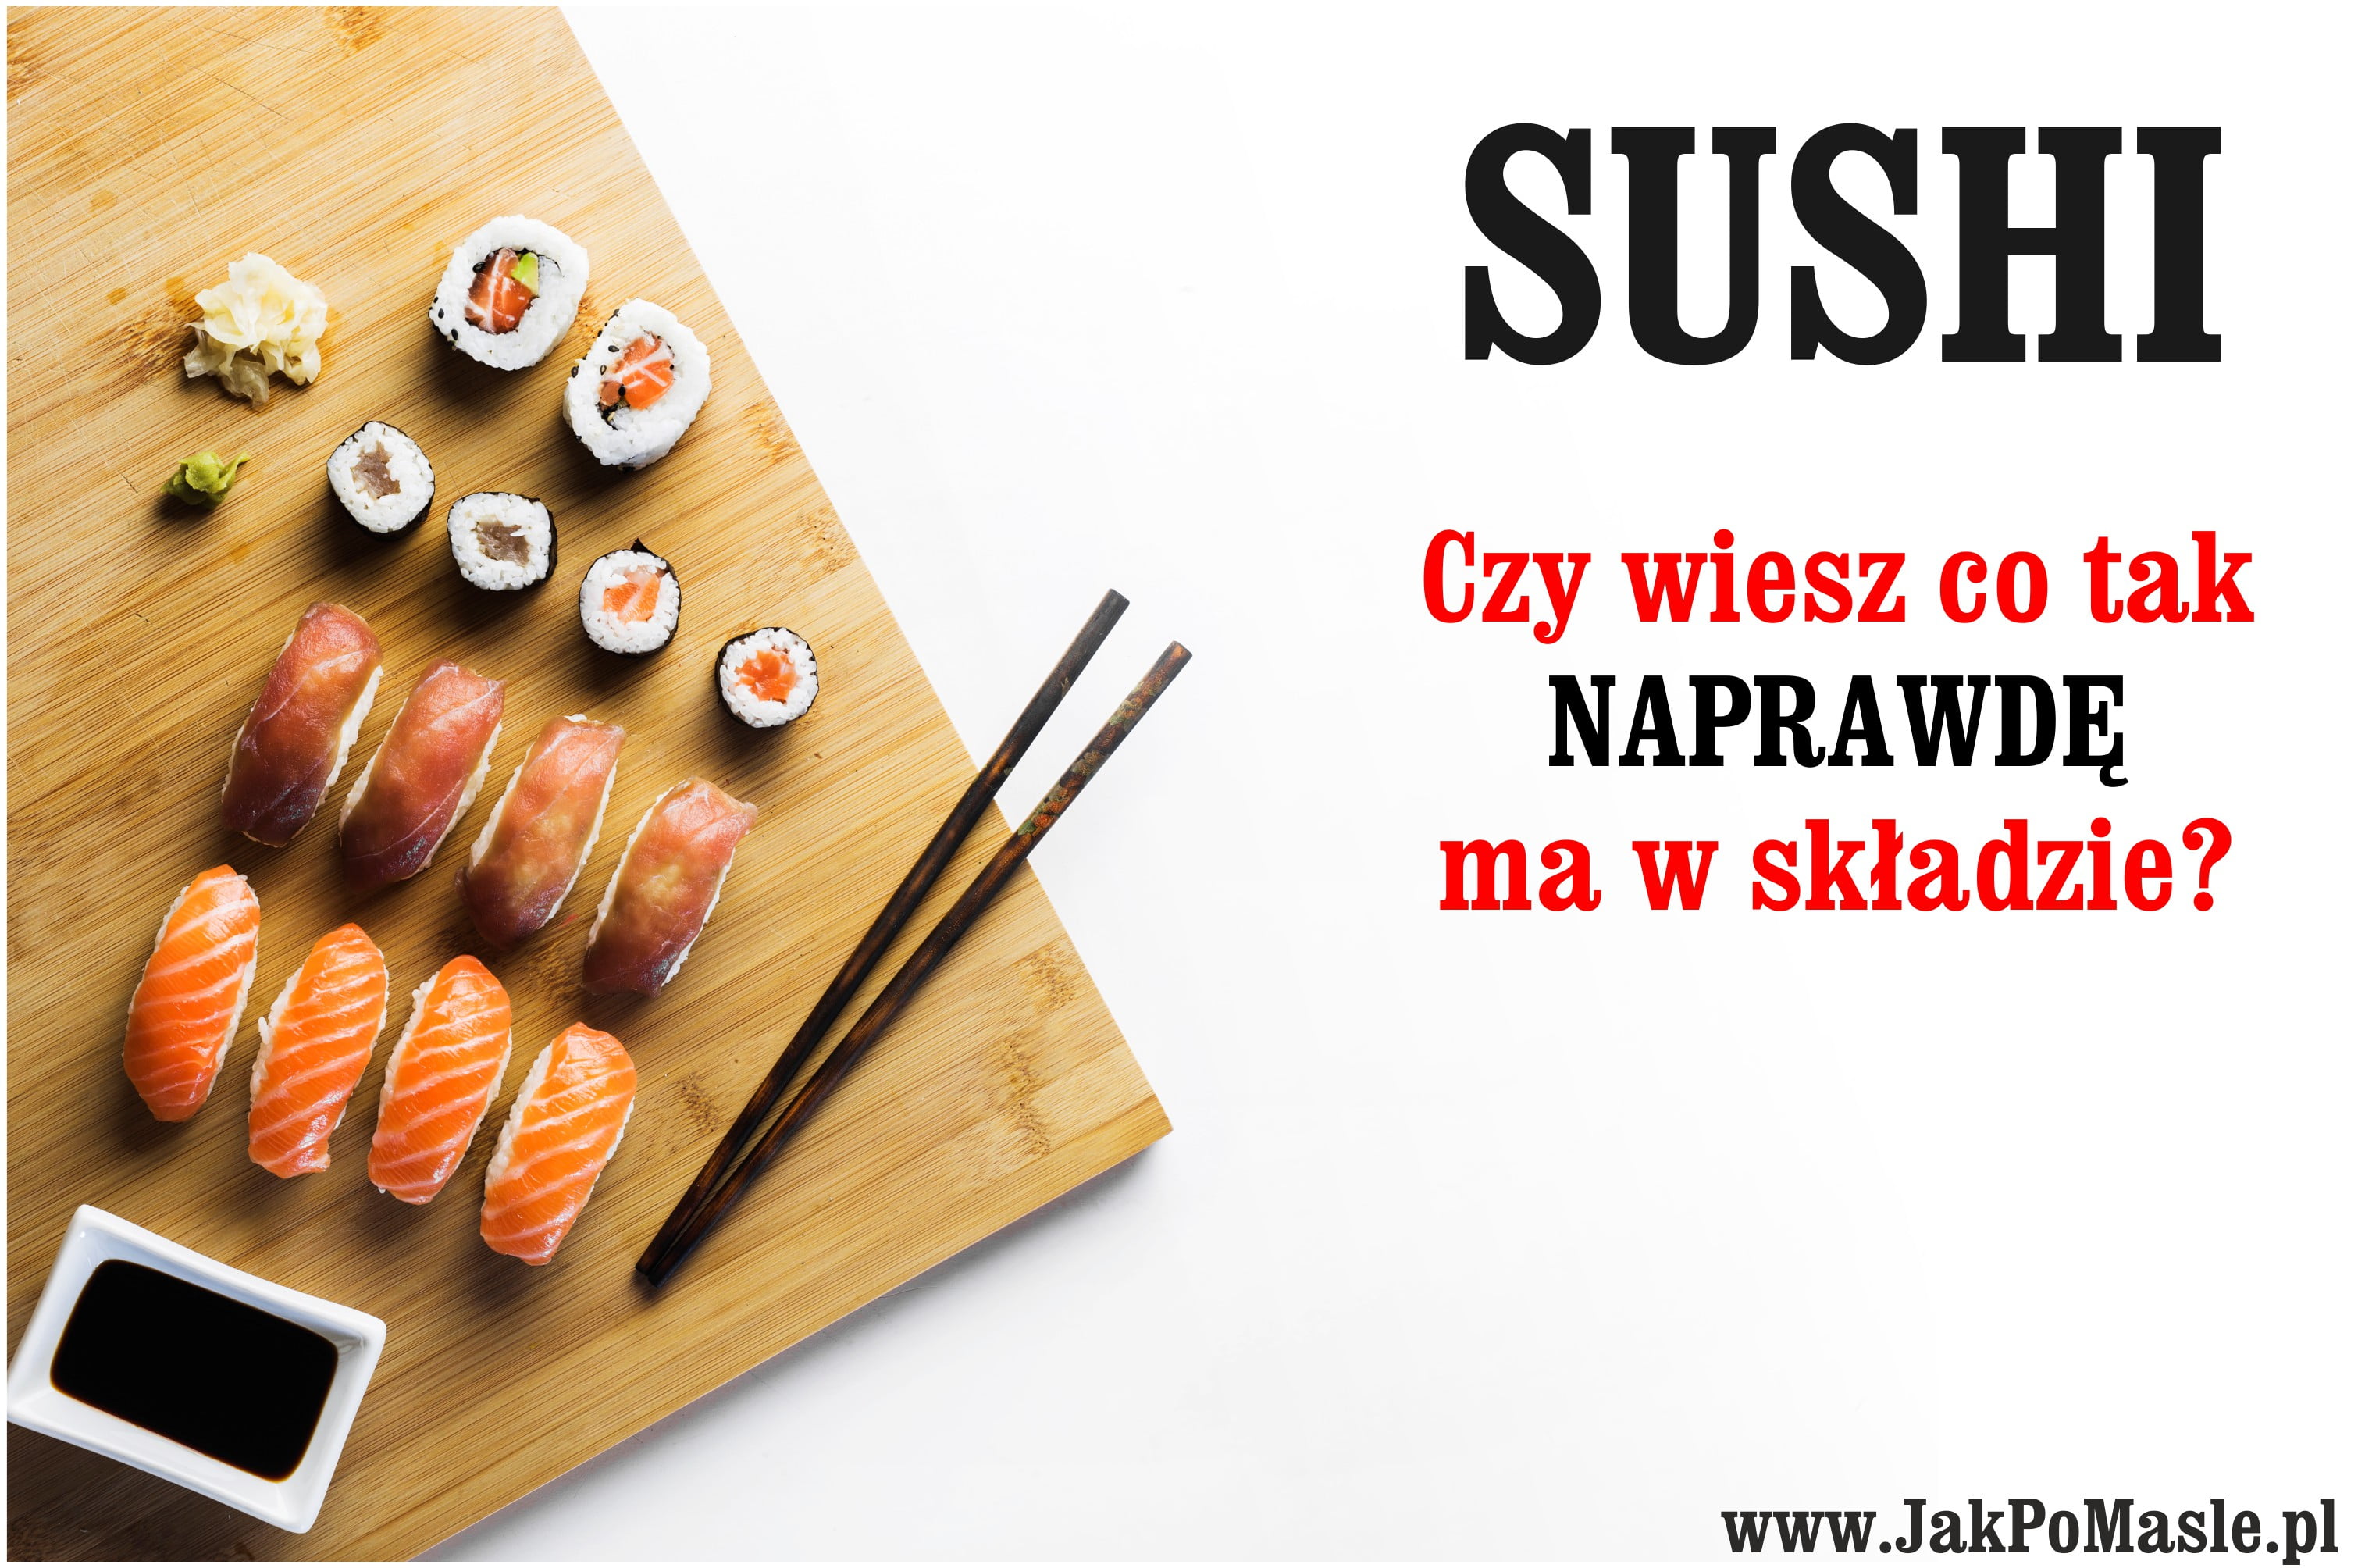 Czy sushi jest zdrowe? Korzyści czy ryzyko dla zdrowia?